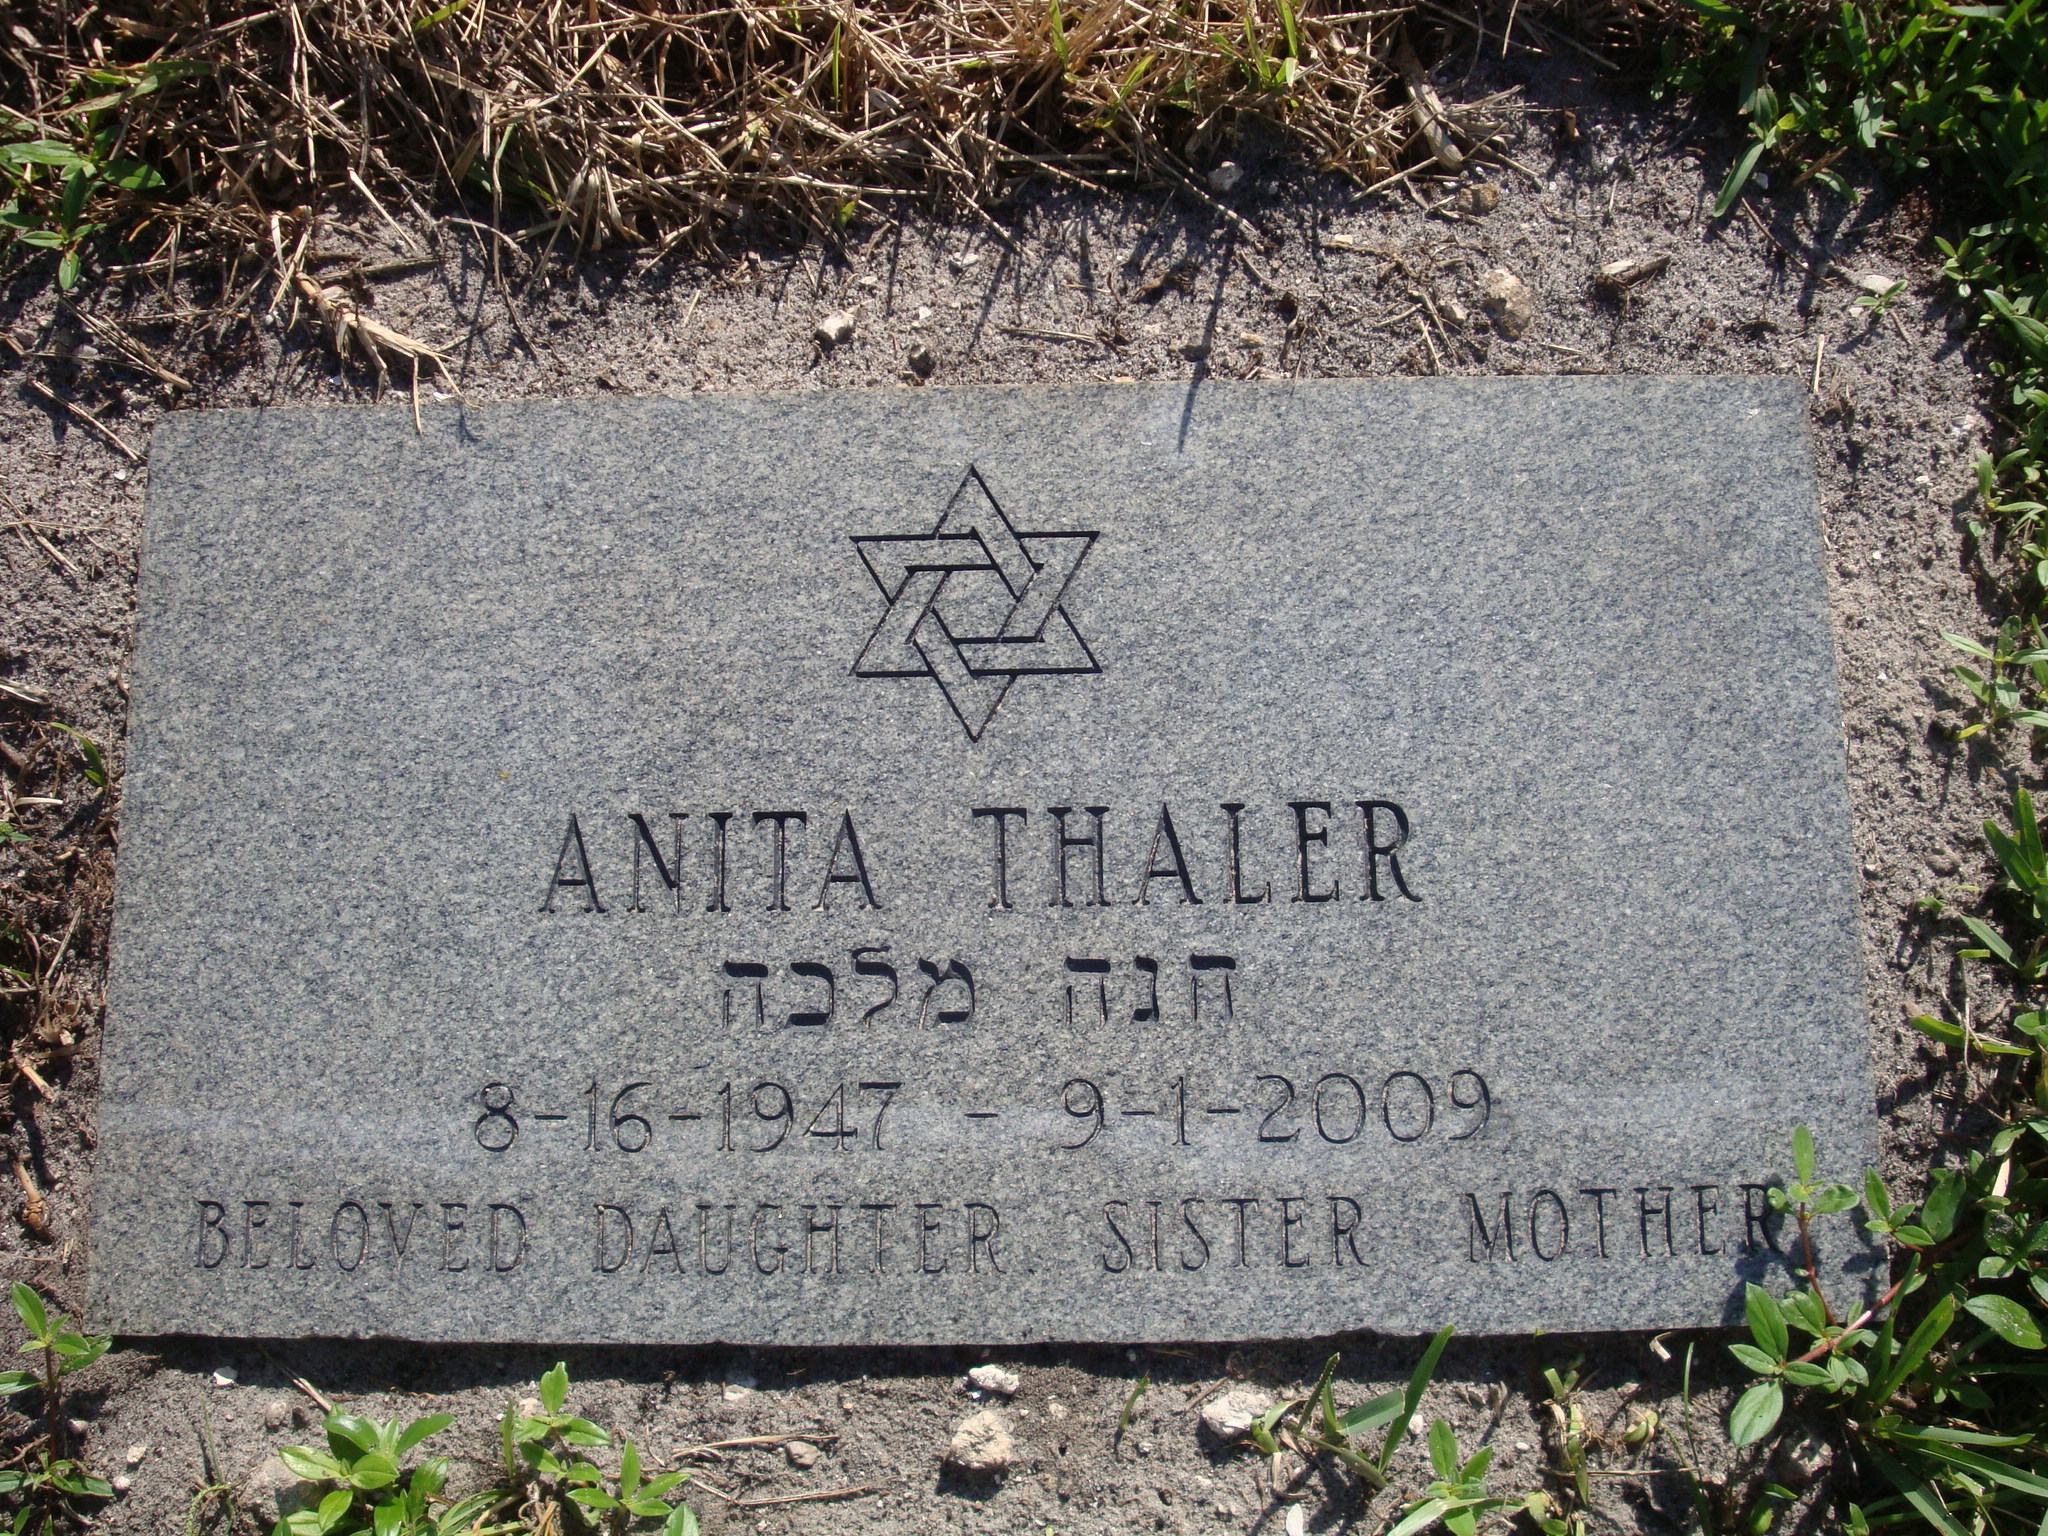 Anita Thaler